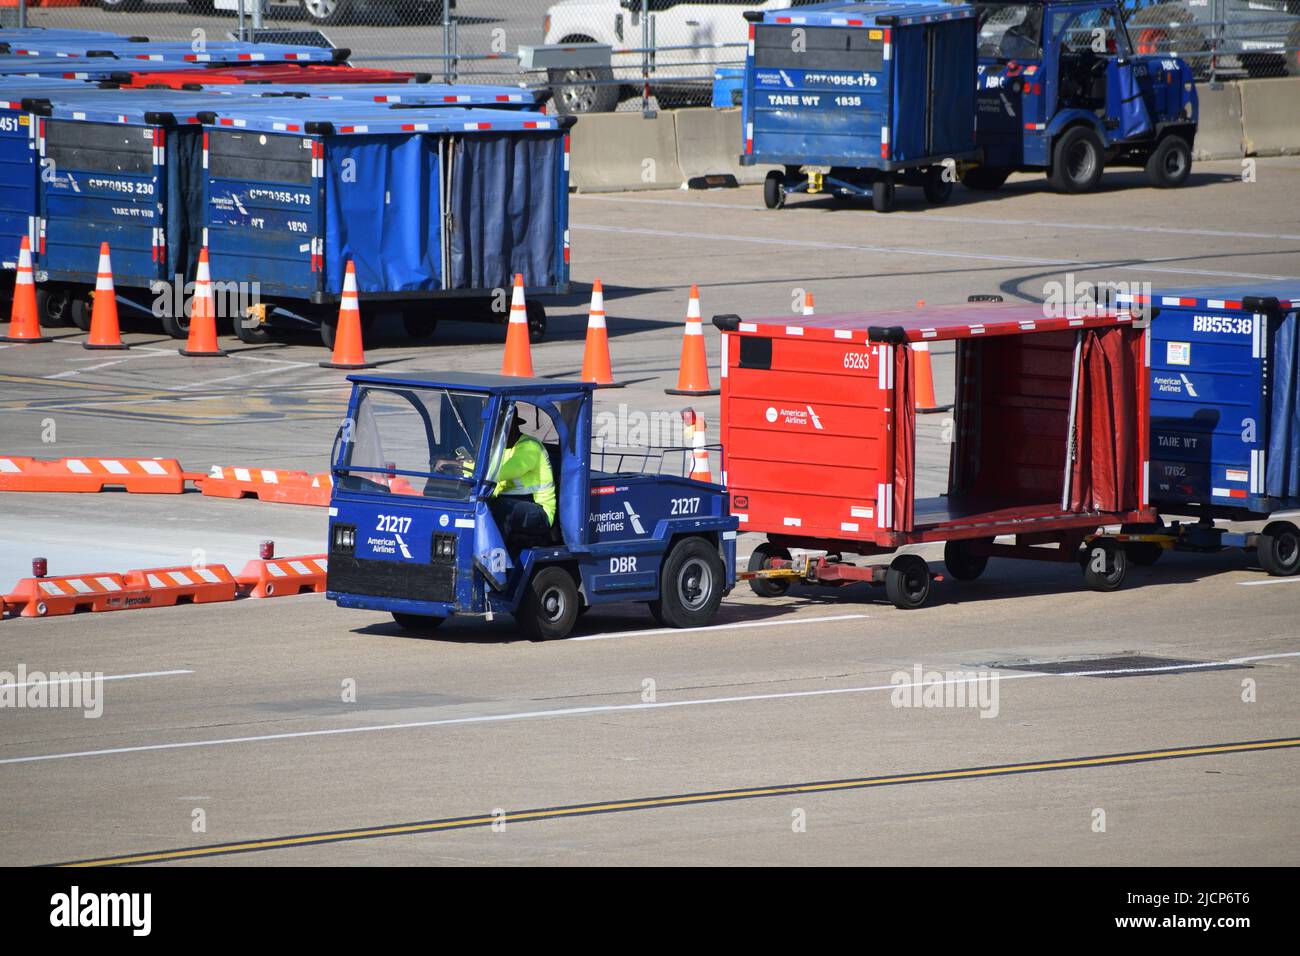 Ein Mitarbeiter der Rampendienste von American Airlines, der einen Traktor fährt, der Gepäckwagen vor Terminal C am Flughafen DFW (Dallas-Fort Worth Airport) zieht Stockfoto